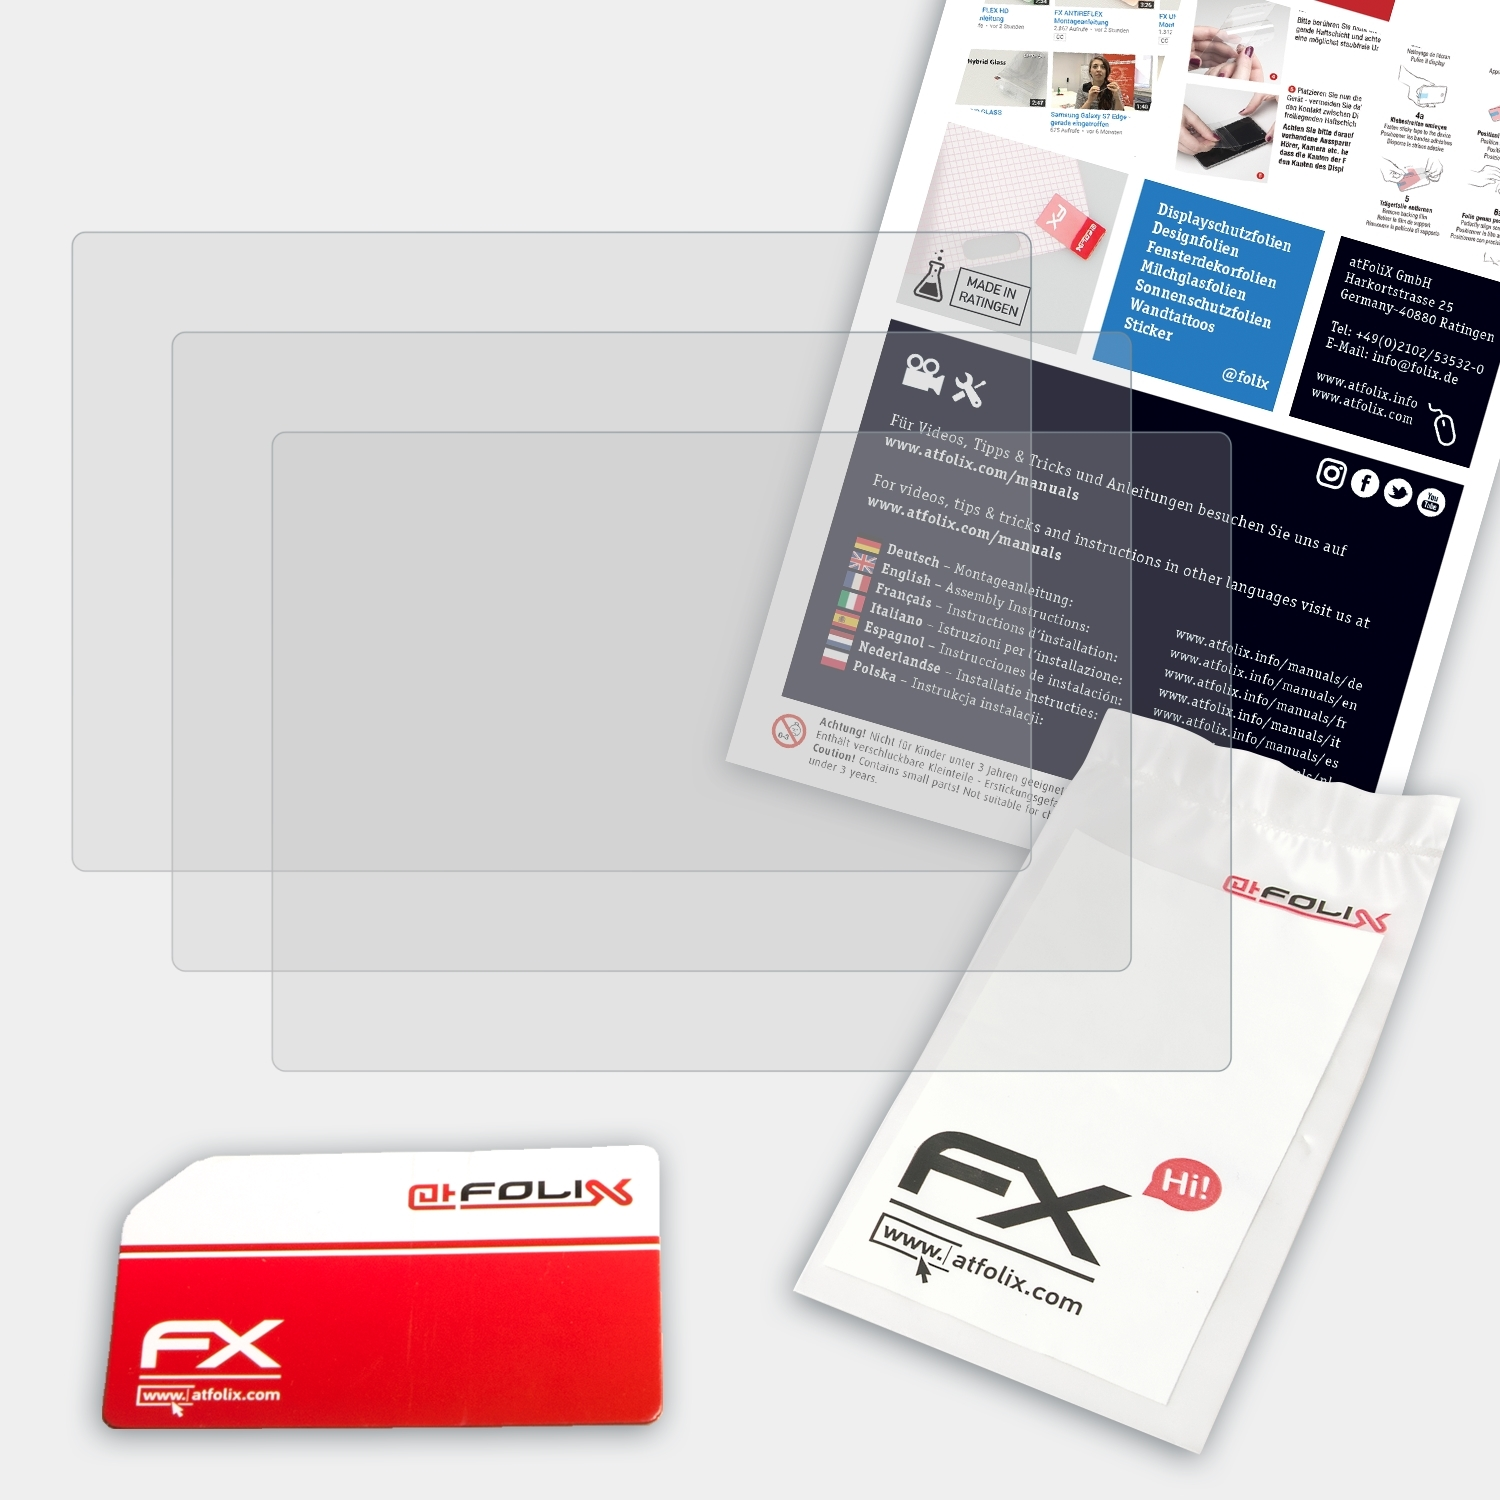 Snap 3x FX-Antireflex Touch) Polaroid ATFOLIX Displayschutz(für